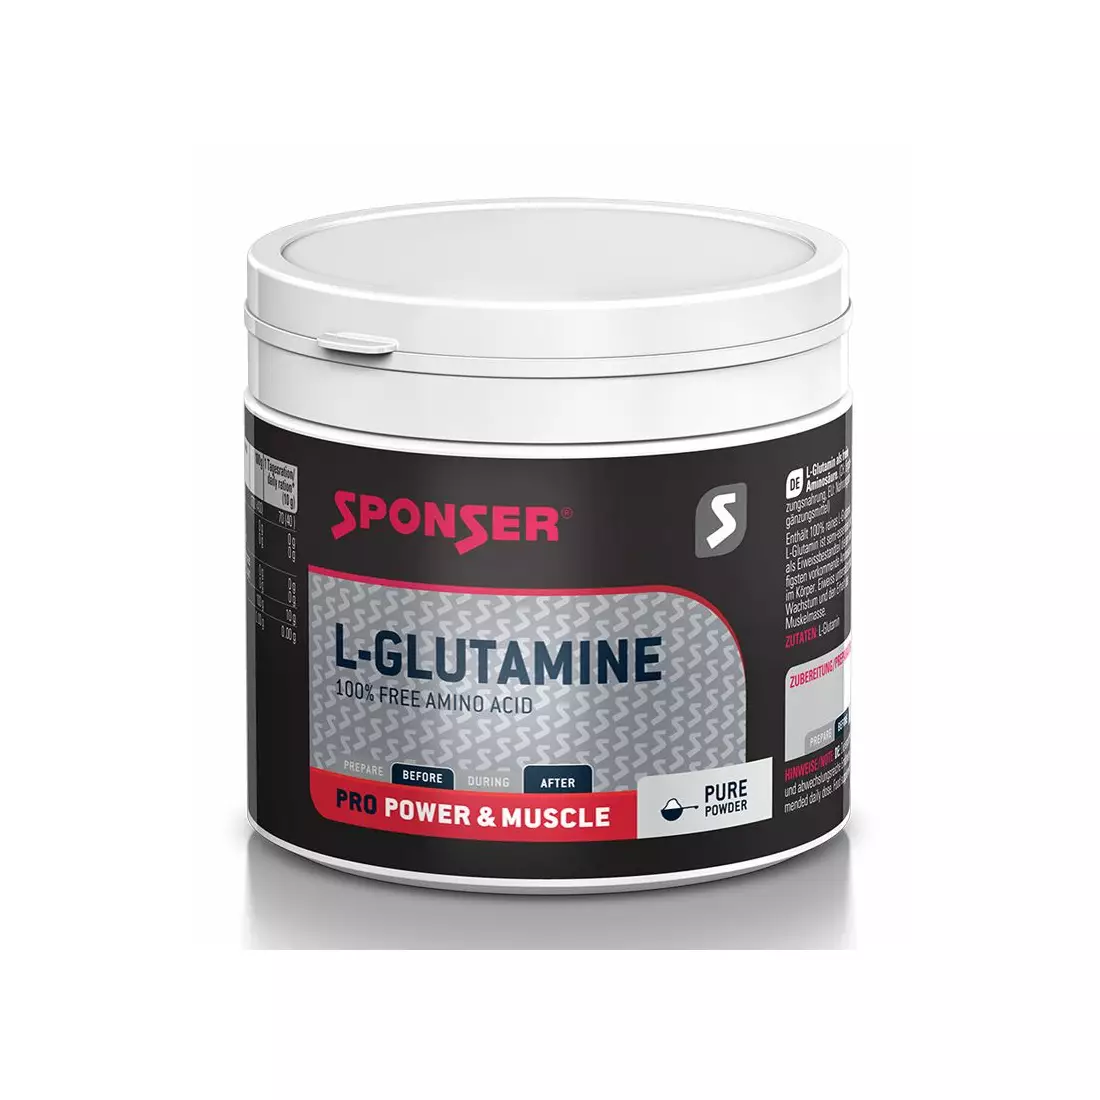 Reines Glutamin SPONSER L-GLUTAMINE 100% PURE können 350g